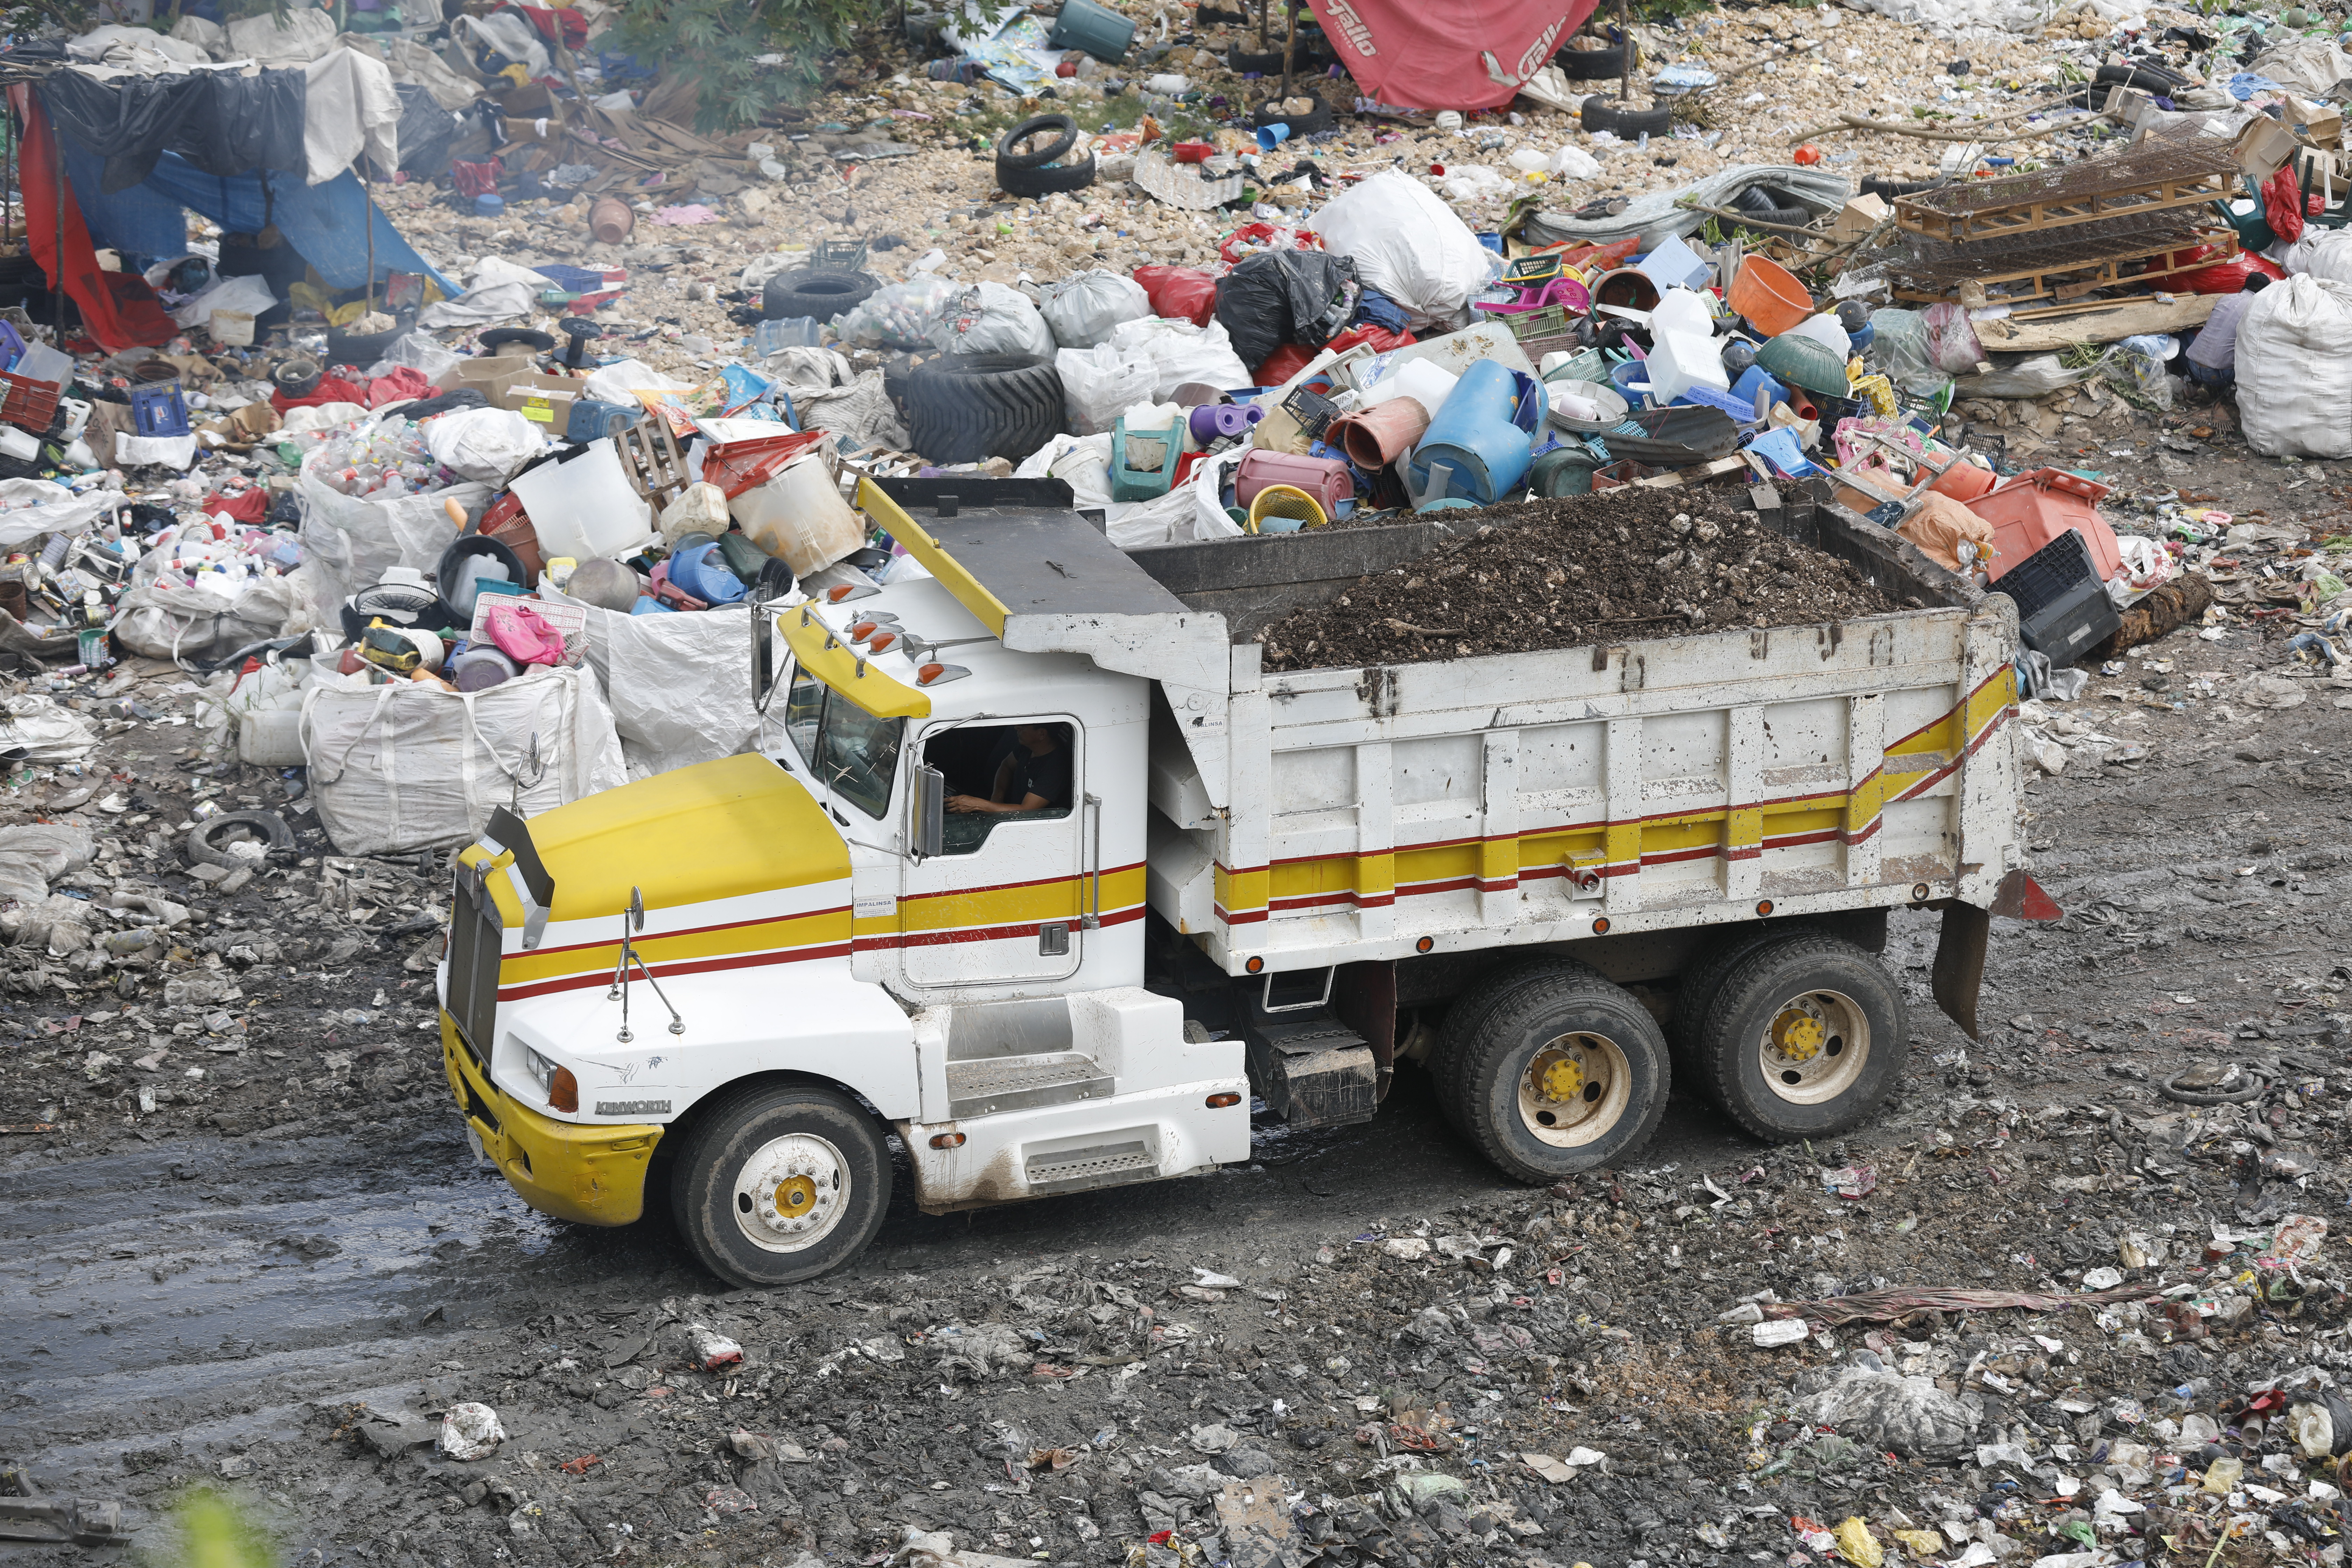 Asociación La Fuerza del Cambio, Guatemala - Proyecto de Reciclaje